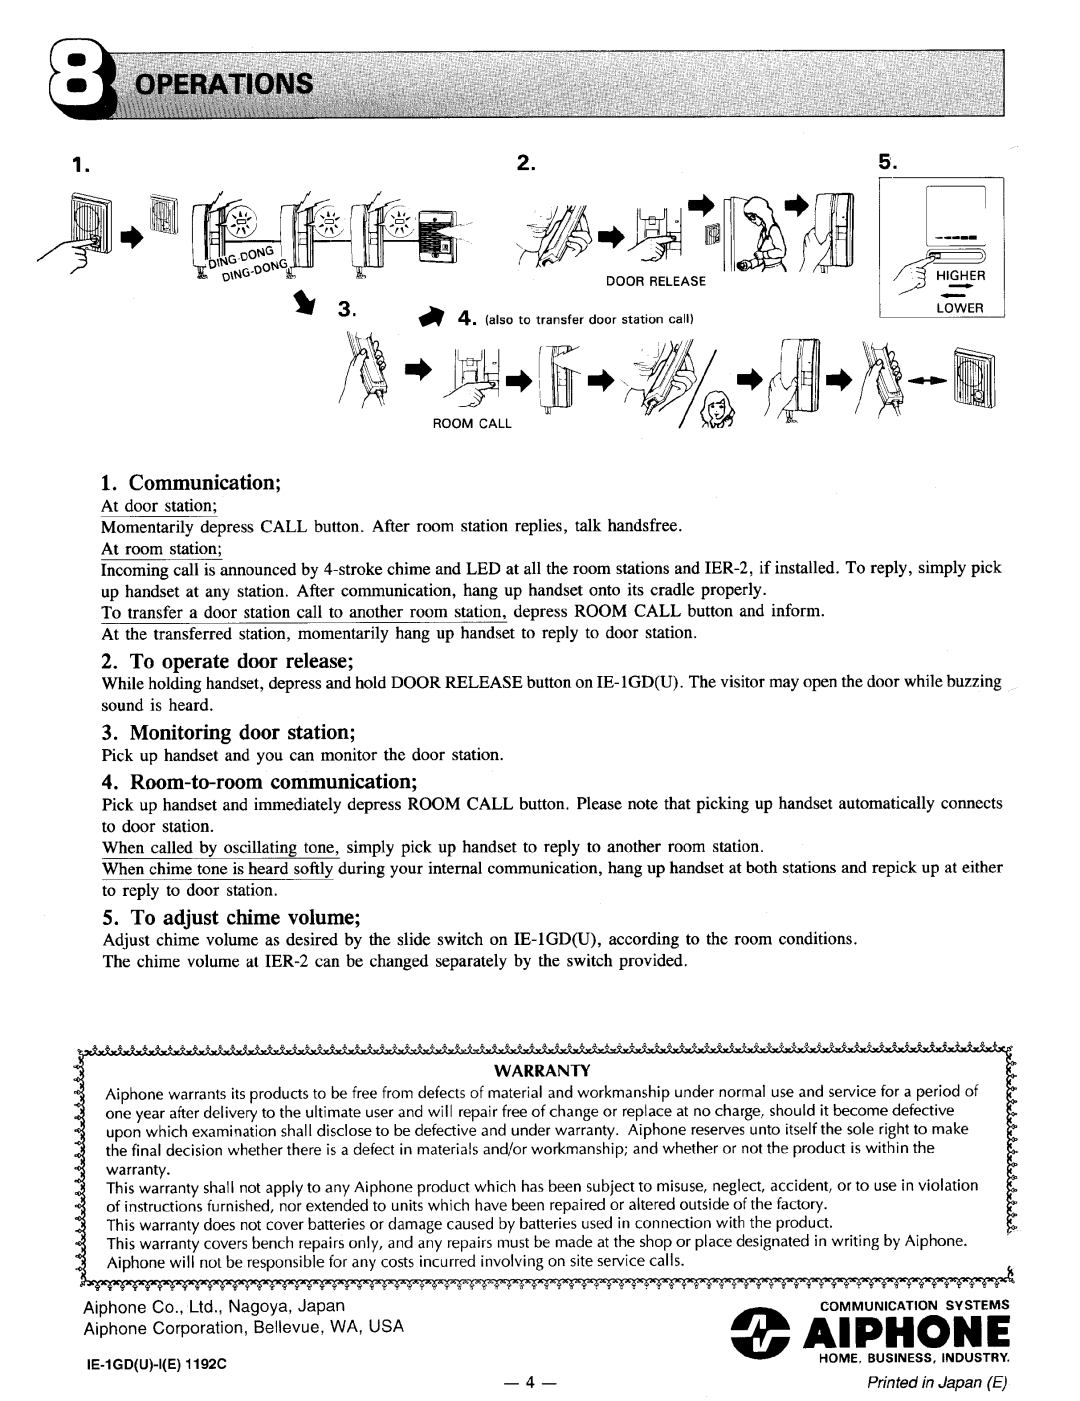 Aiphone IE-1GD(U) manual 